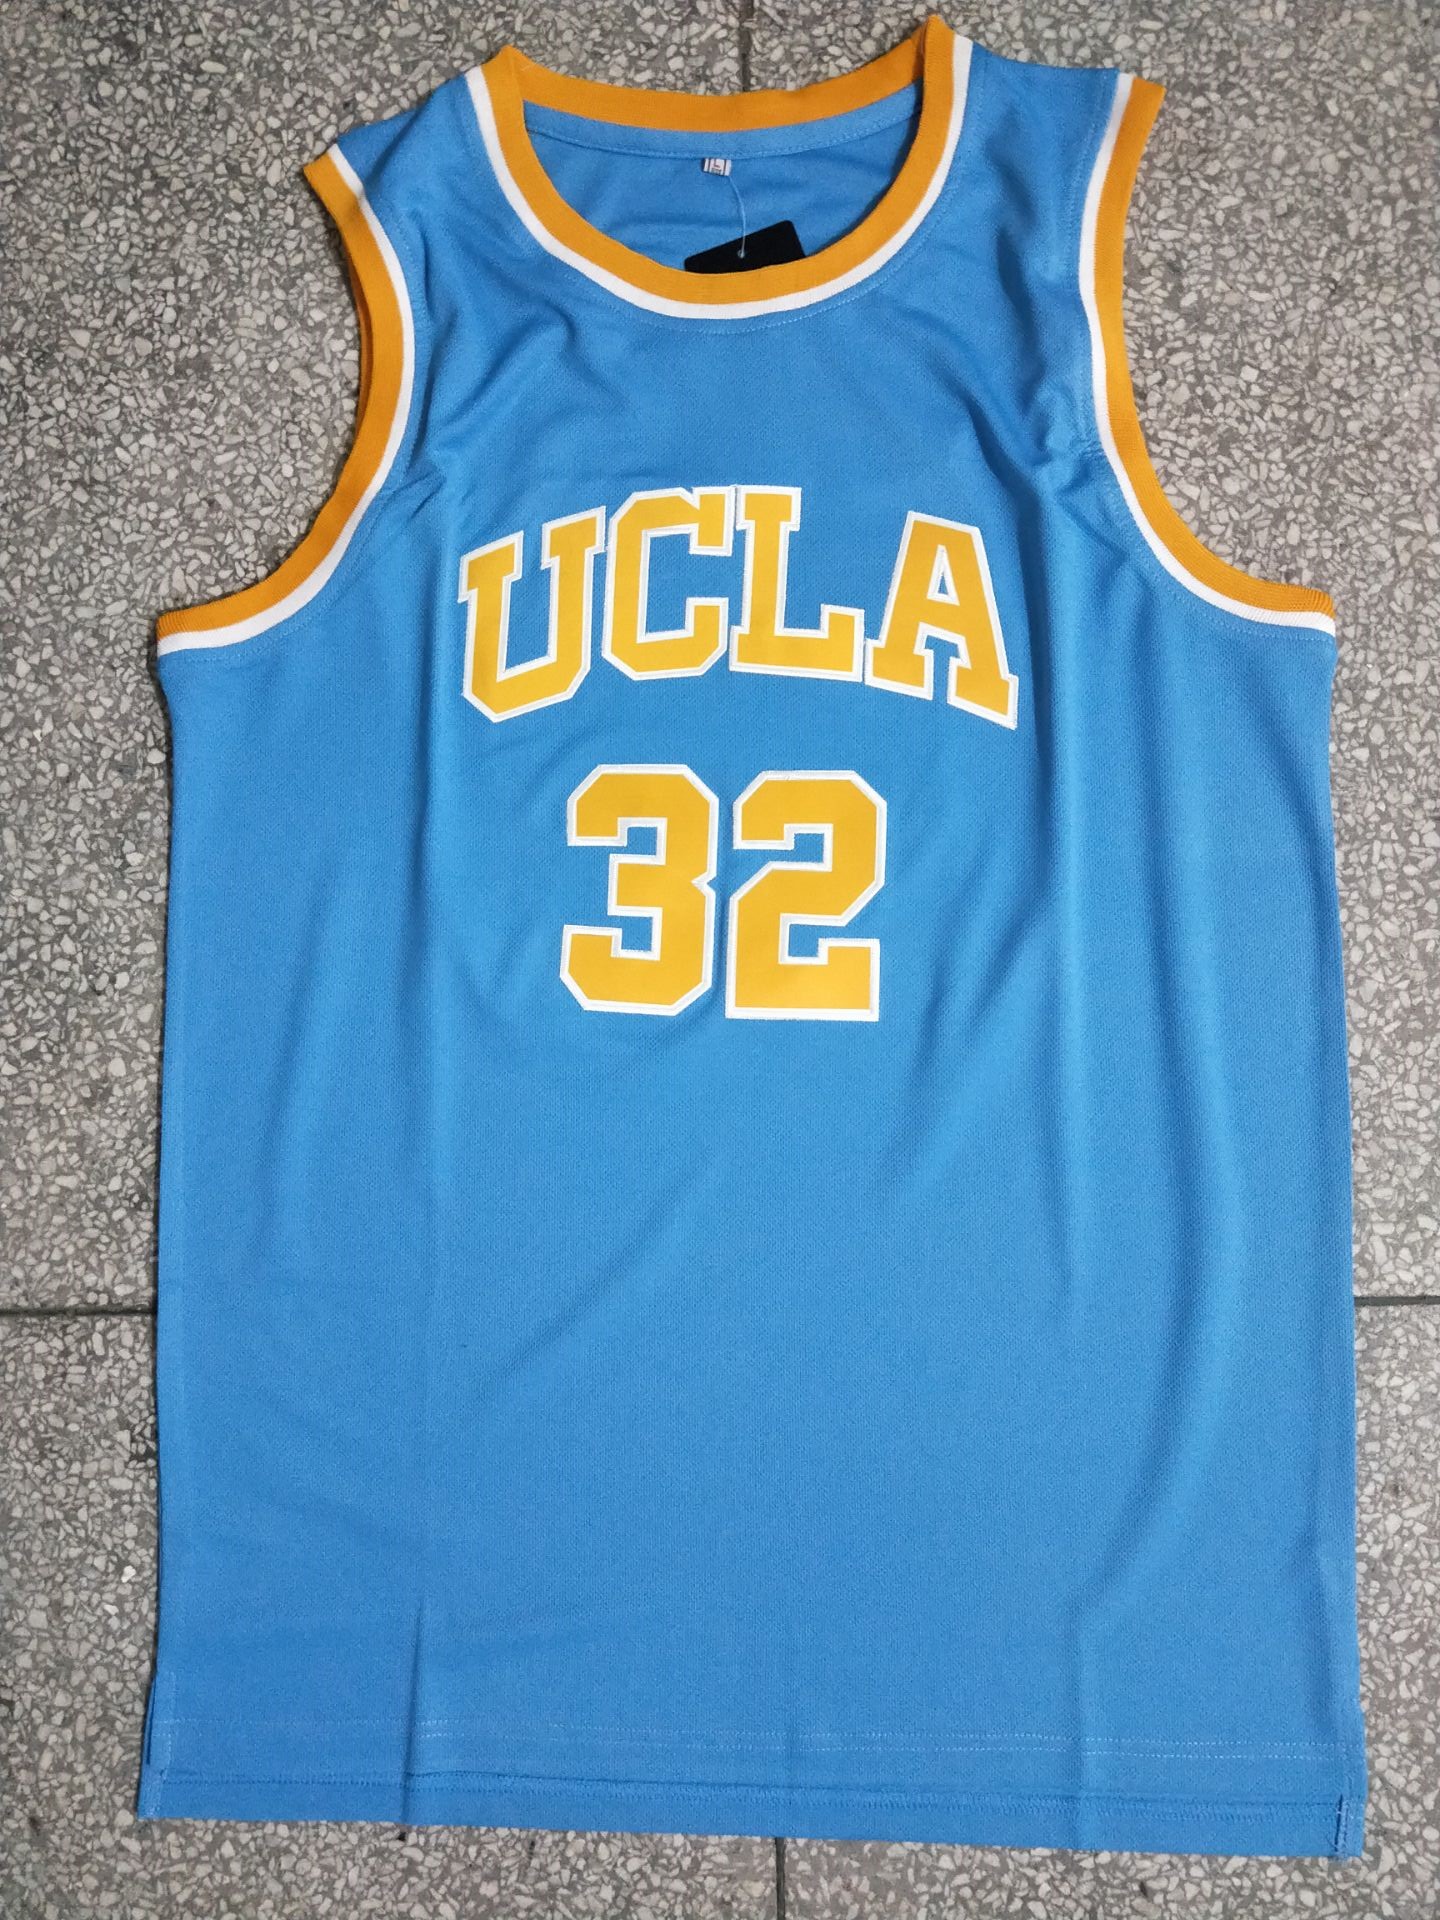 加利福尼亚大学洛杉矶分校比尔·沃尔顿32号蓝色刺绣篮球背心球衣-封面